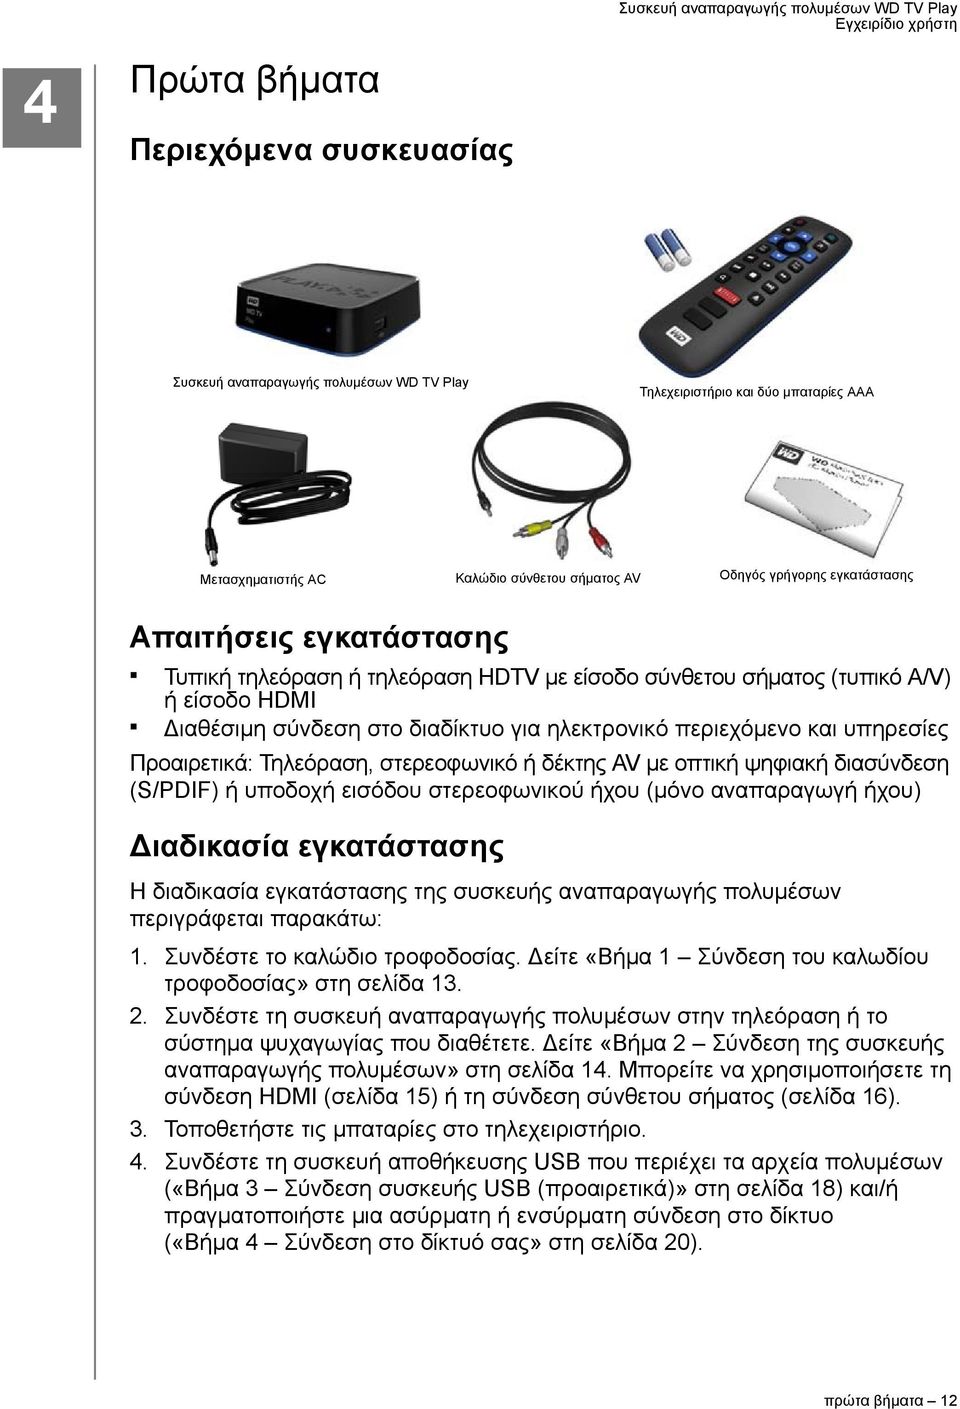 Τηλεόραση, στερεοφωνικό ή δέκτης AV με οπτική ψηφιακή διασύνδεση (S/PDIF) ή υποδοχή εισόδου στερεοφωνικού ήχου (μόνο αναπαραγωγή ήχου) Διαδικασία εγκατάστασης Η διαδικασία εγκατάστασης της συσκευής